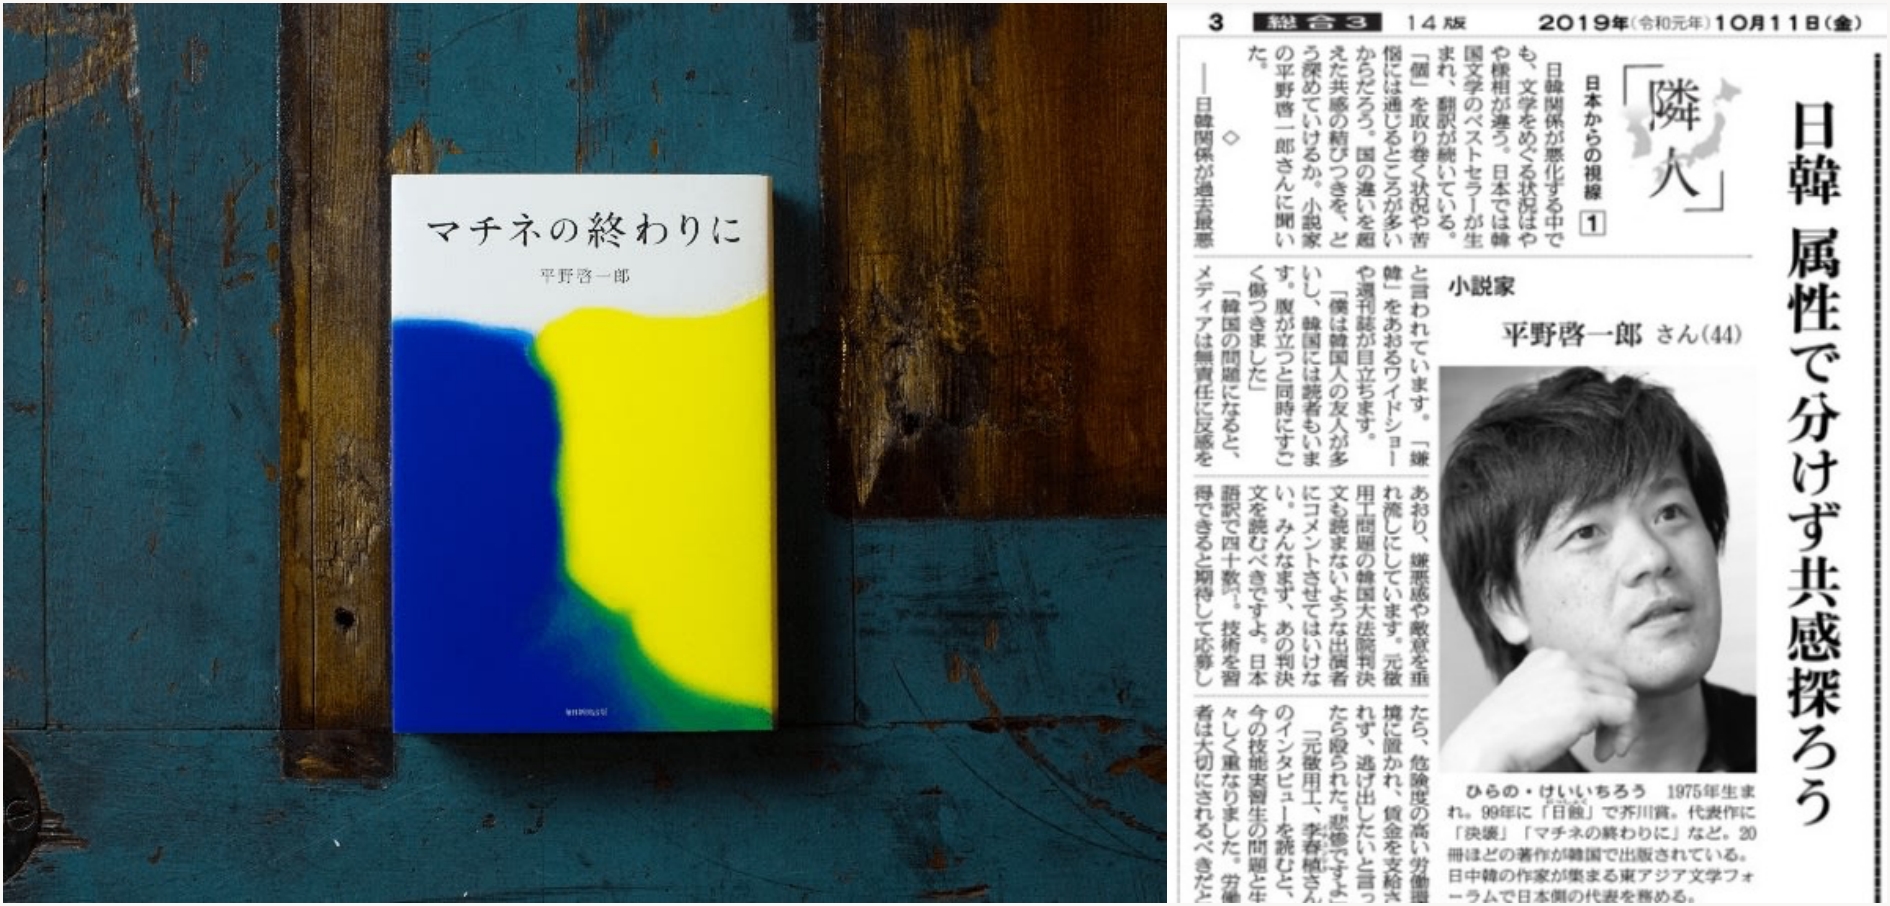 후쿠야마 마사하루 주연의 '가을의 마티네'가 히라노의 소설 '마티네의 끝에서'를 원작으로 하고있어요. 더불어 그가 신문에 기고한 칼럼 '일본과 한국 '속성'으로 구분하지 말고 공감을 깊게하자'란 제목이네요.